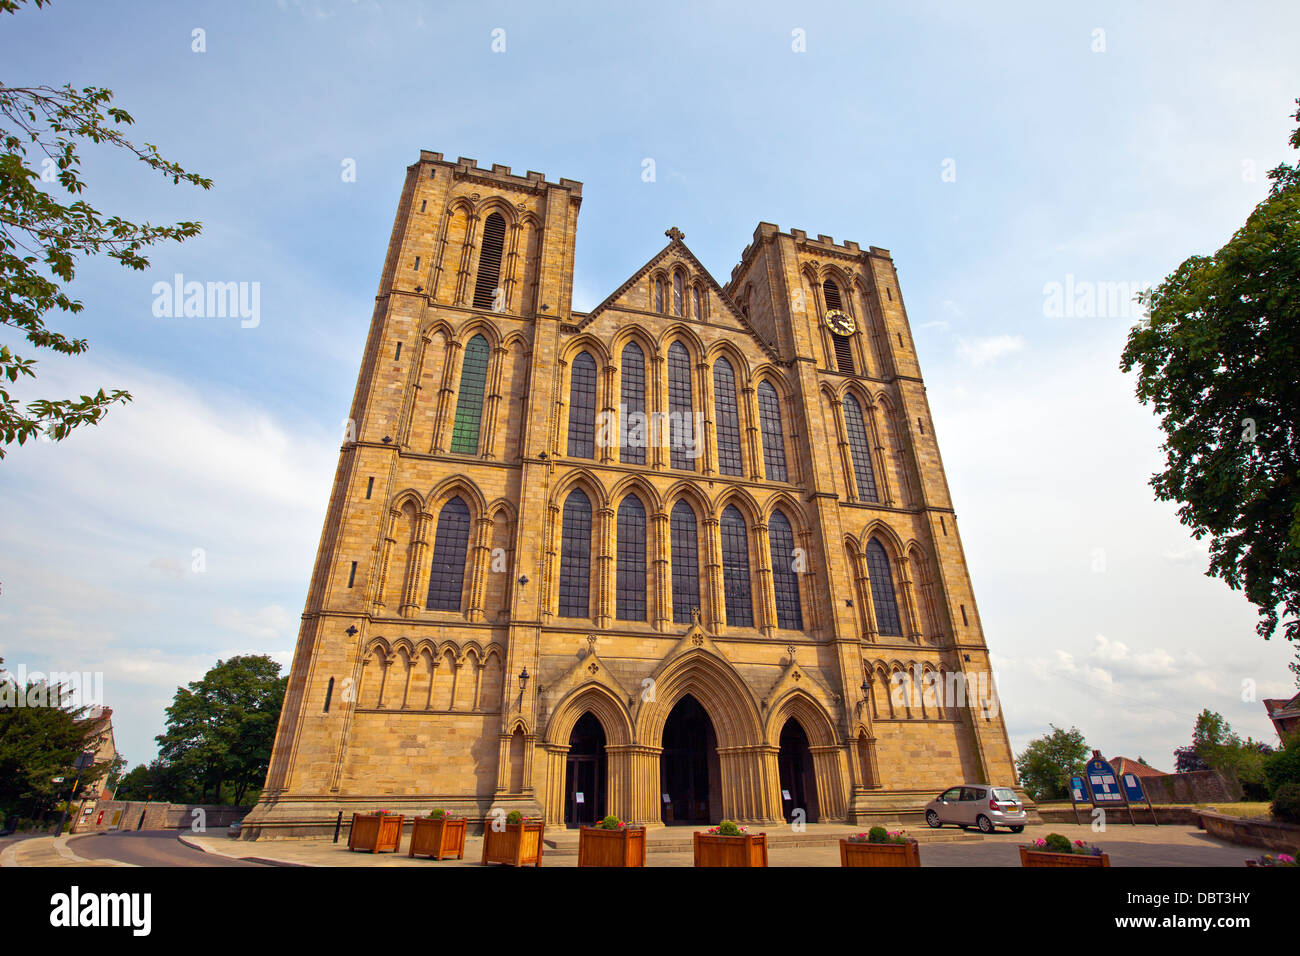 Extérieur d'un quartier historique de la cathédrale de Ripon dans le North Yorkshire, en Angleterre. Banque D'Images